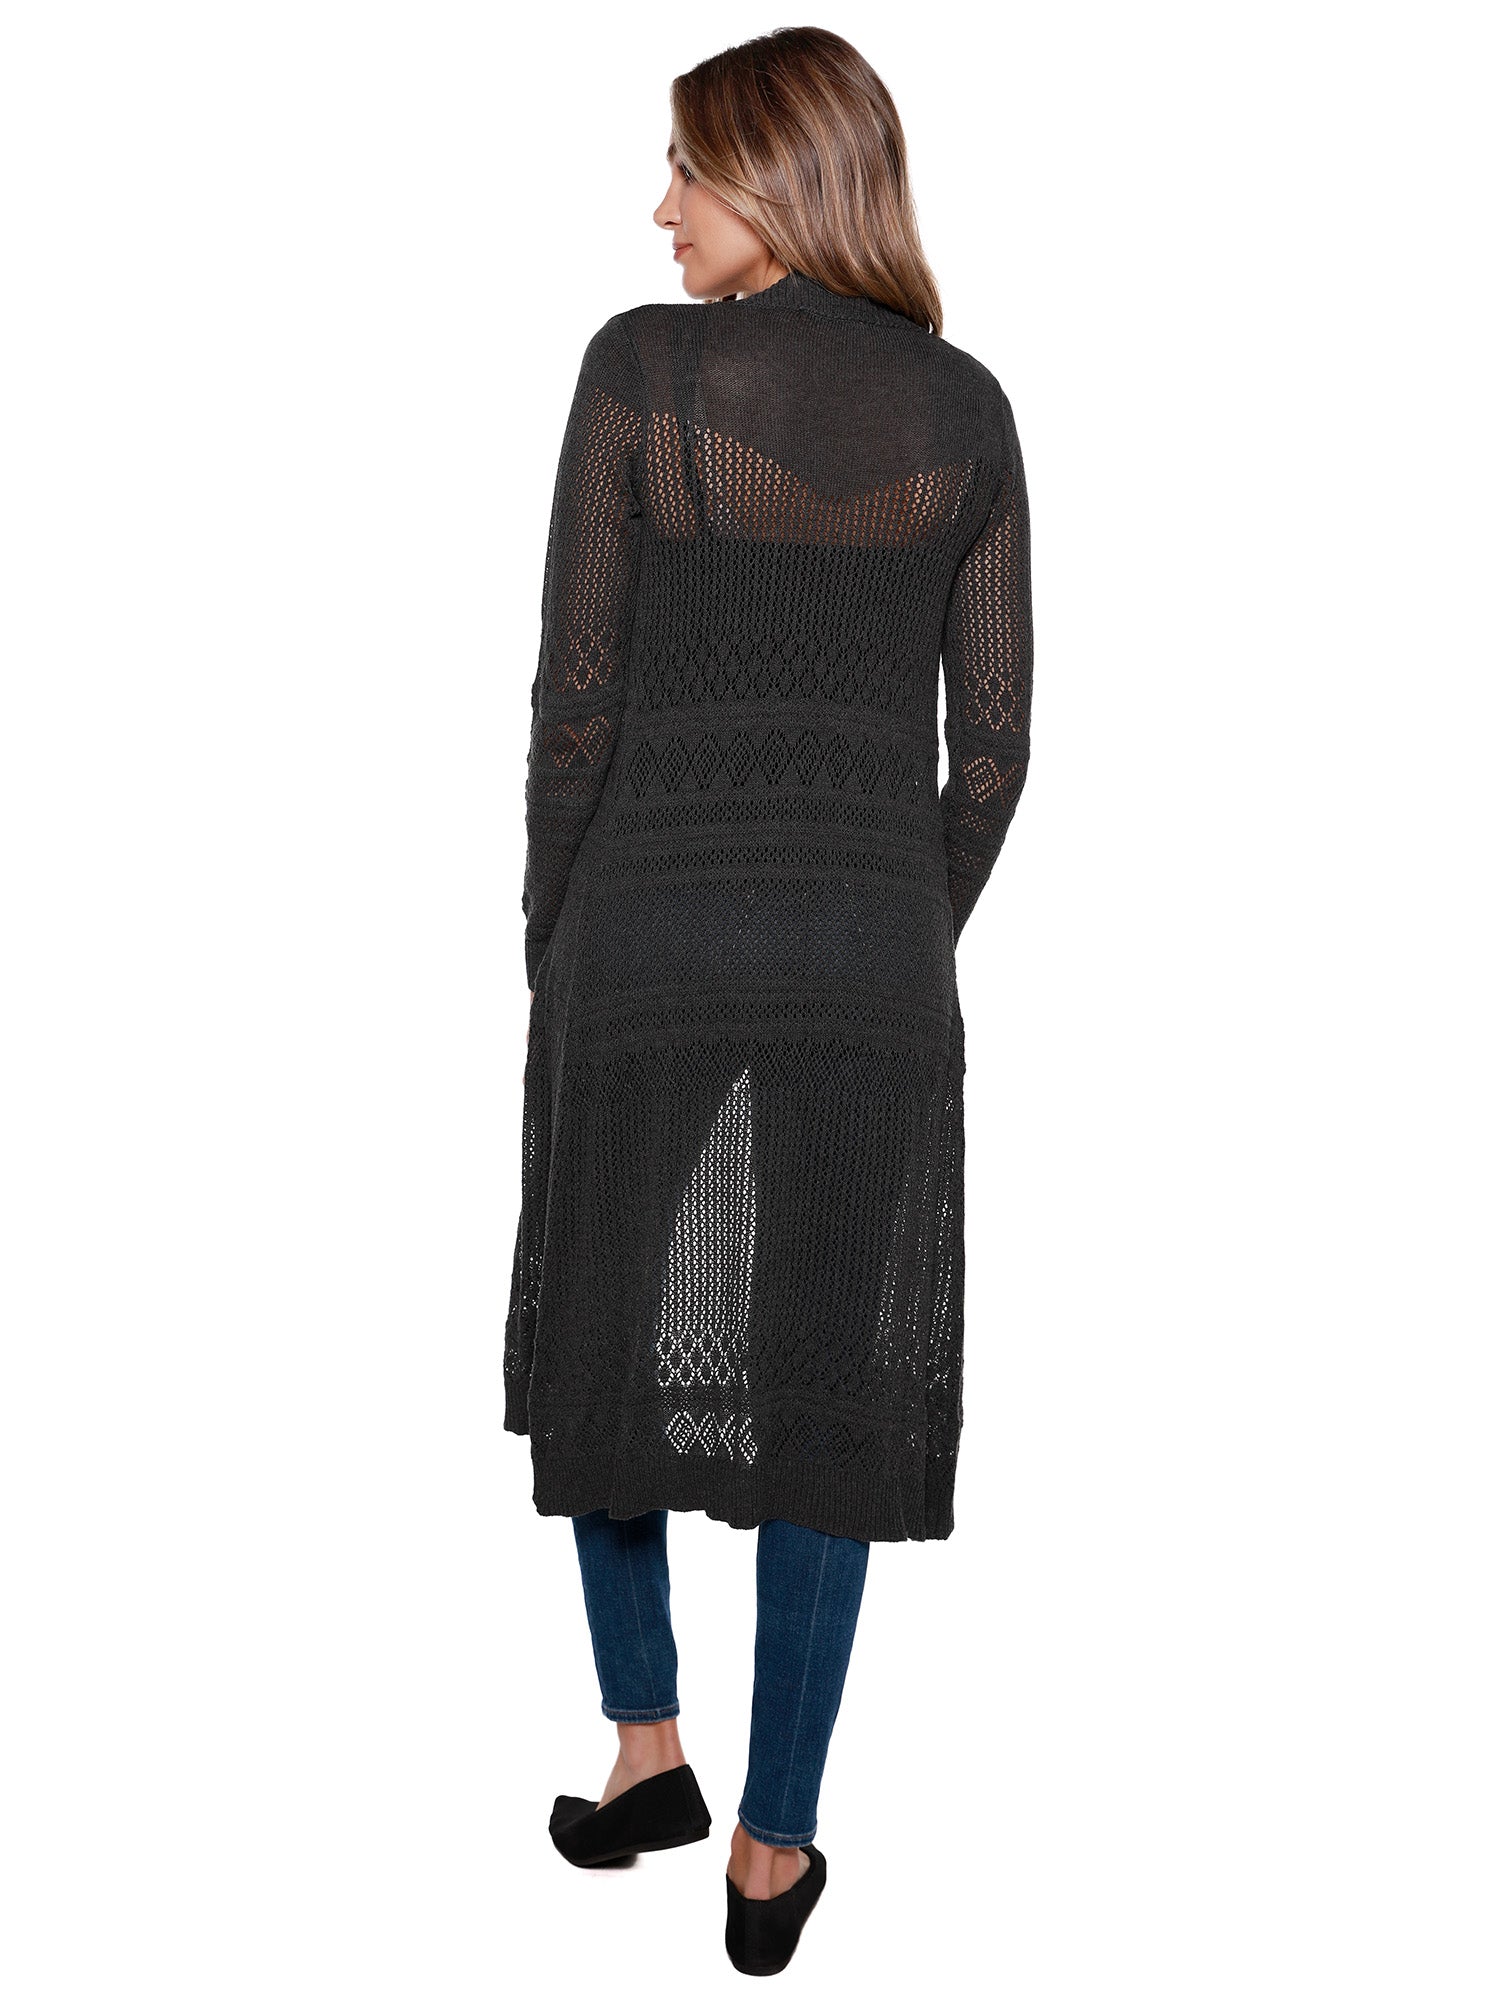 Cárdigan plumero para mujer con punto pointelle de crochet, mangas largas y frente abierto